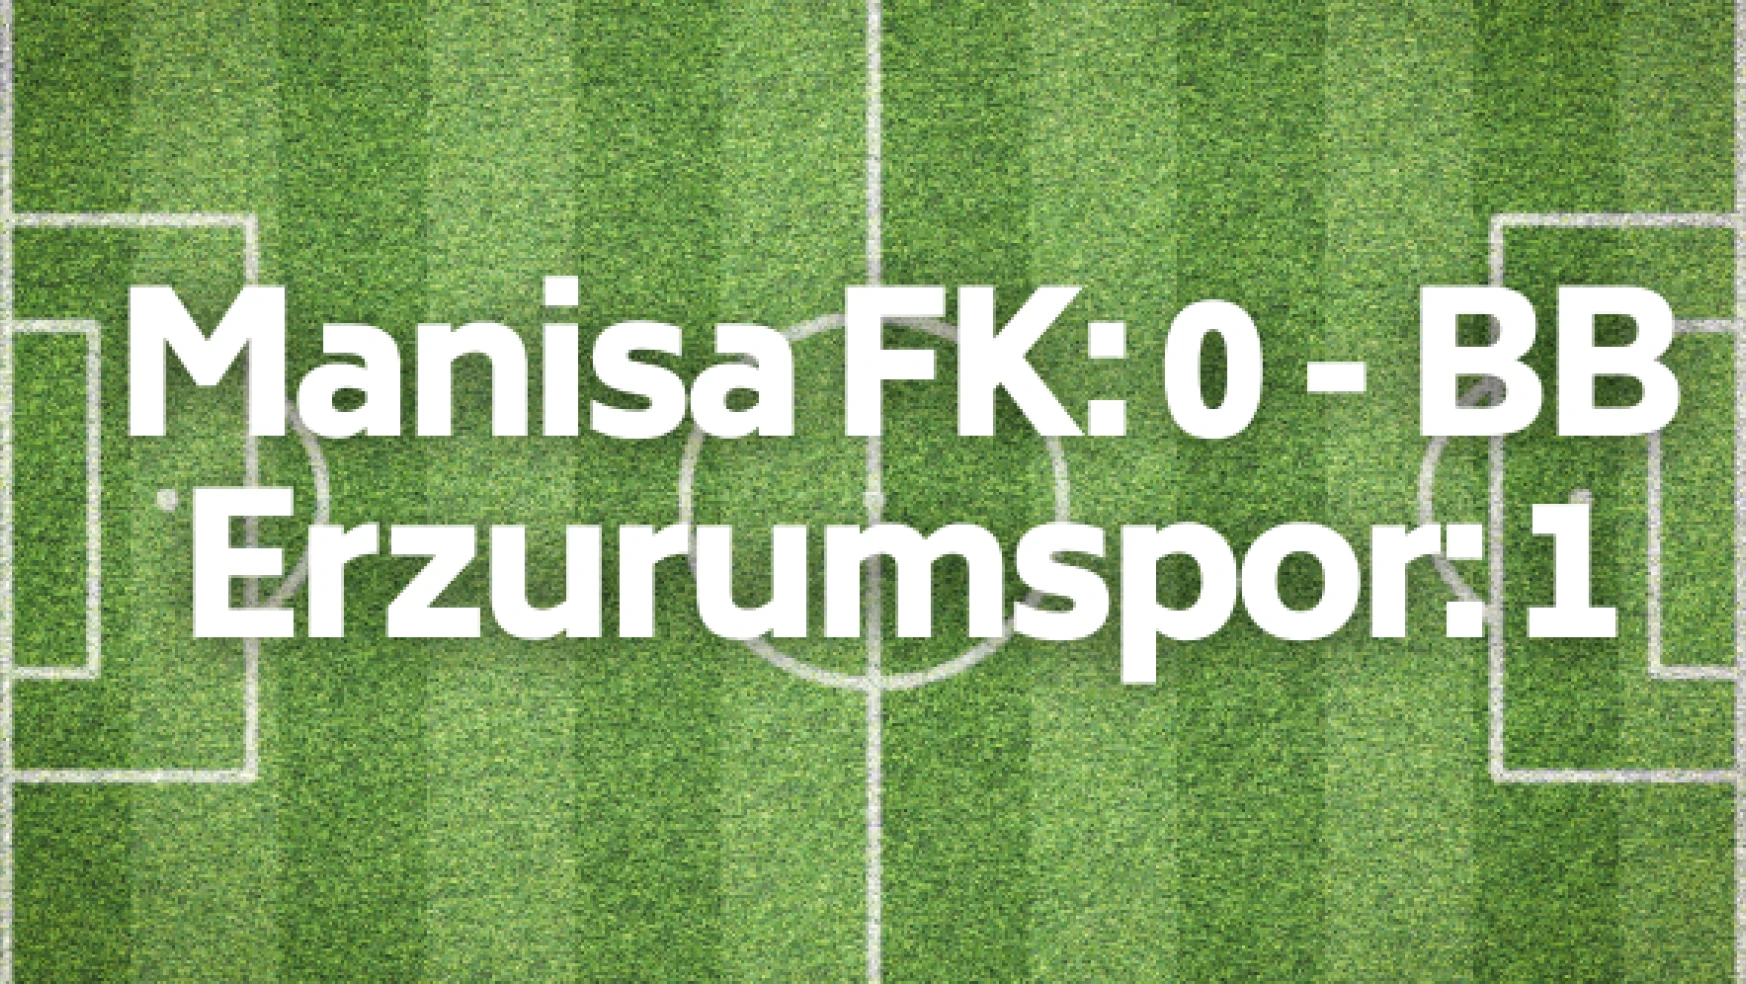 TFF 1. Lig: Manisa FK: 0 - BB Erzurumspor: 1